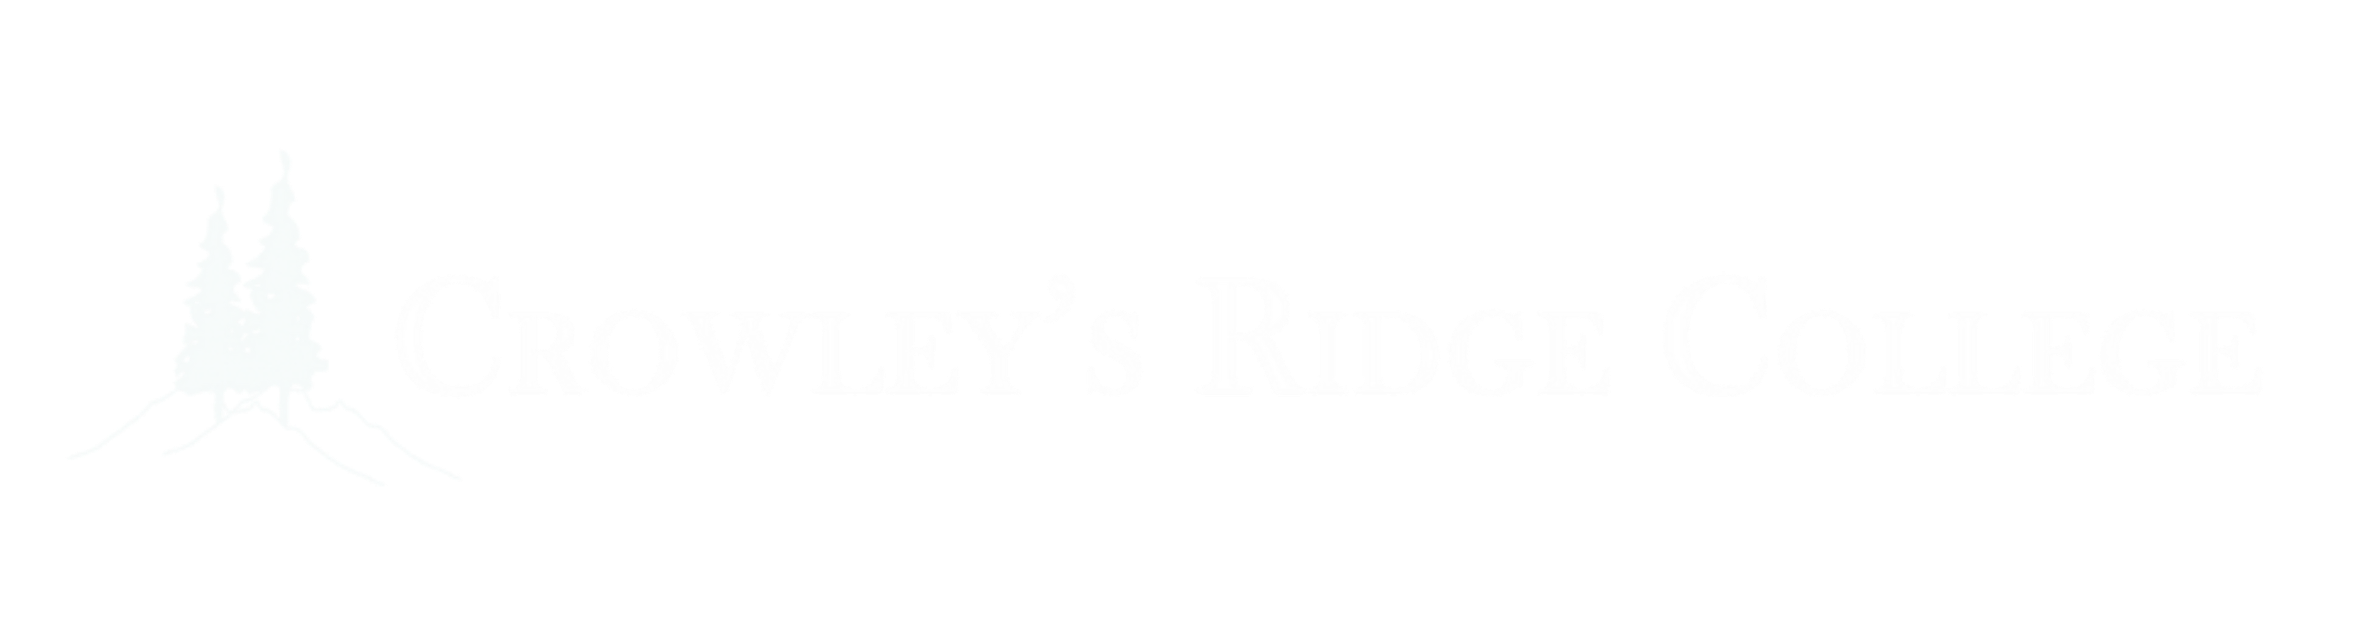 Crowley’s Ridge College Logo